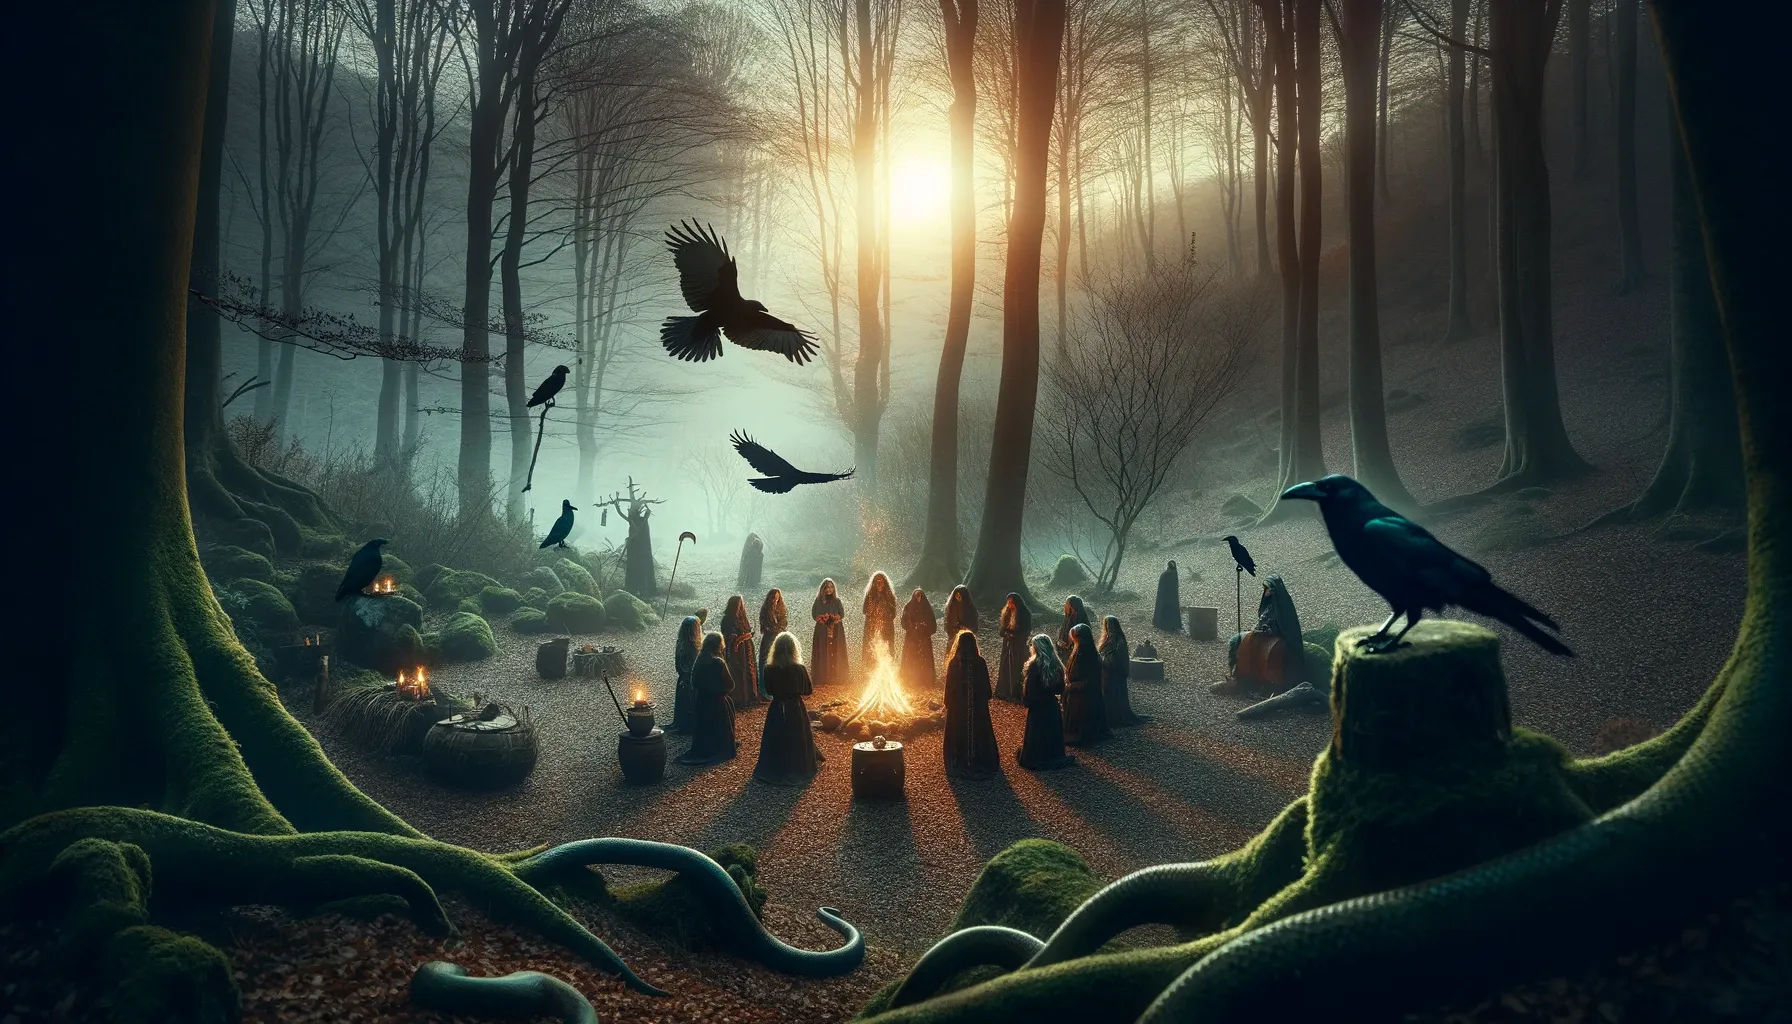 Ritual vasco antiguo en honor a Mari, la diosa de la mitología vasca, en un claro del bosque al atardecer, con personas realizando ceremonias alrededor de un fuego, rodeados de elementos naturales como serpientes y cuervos.